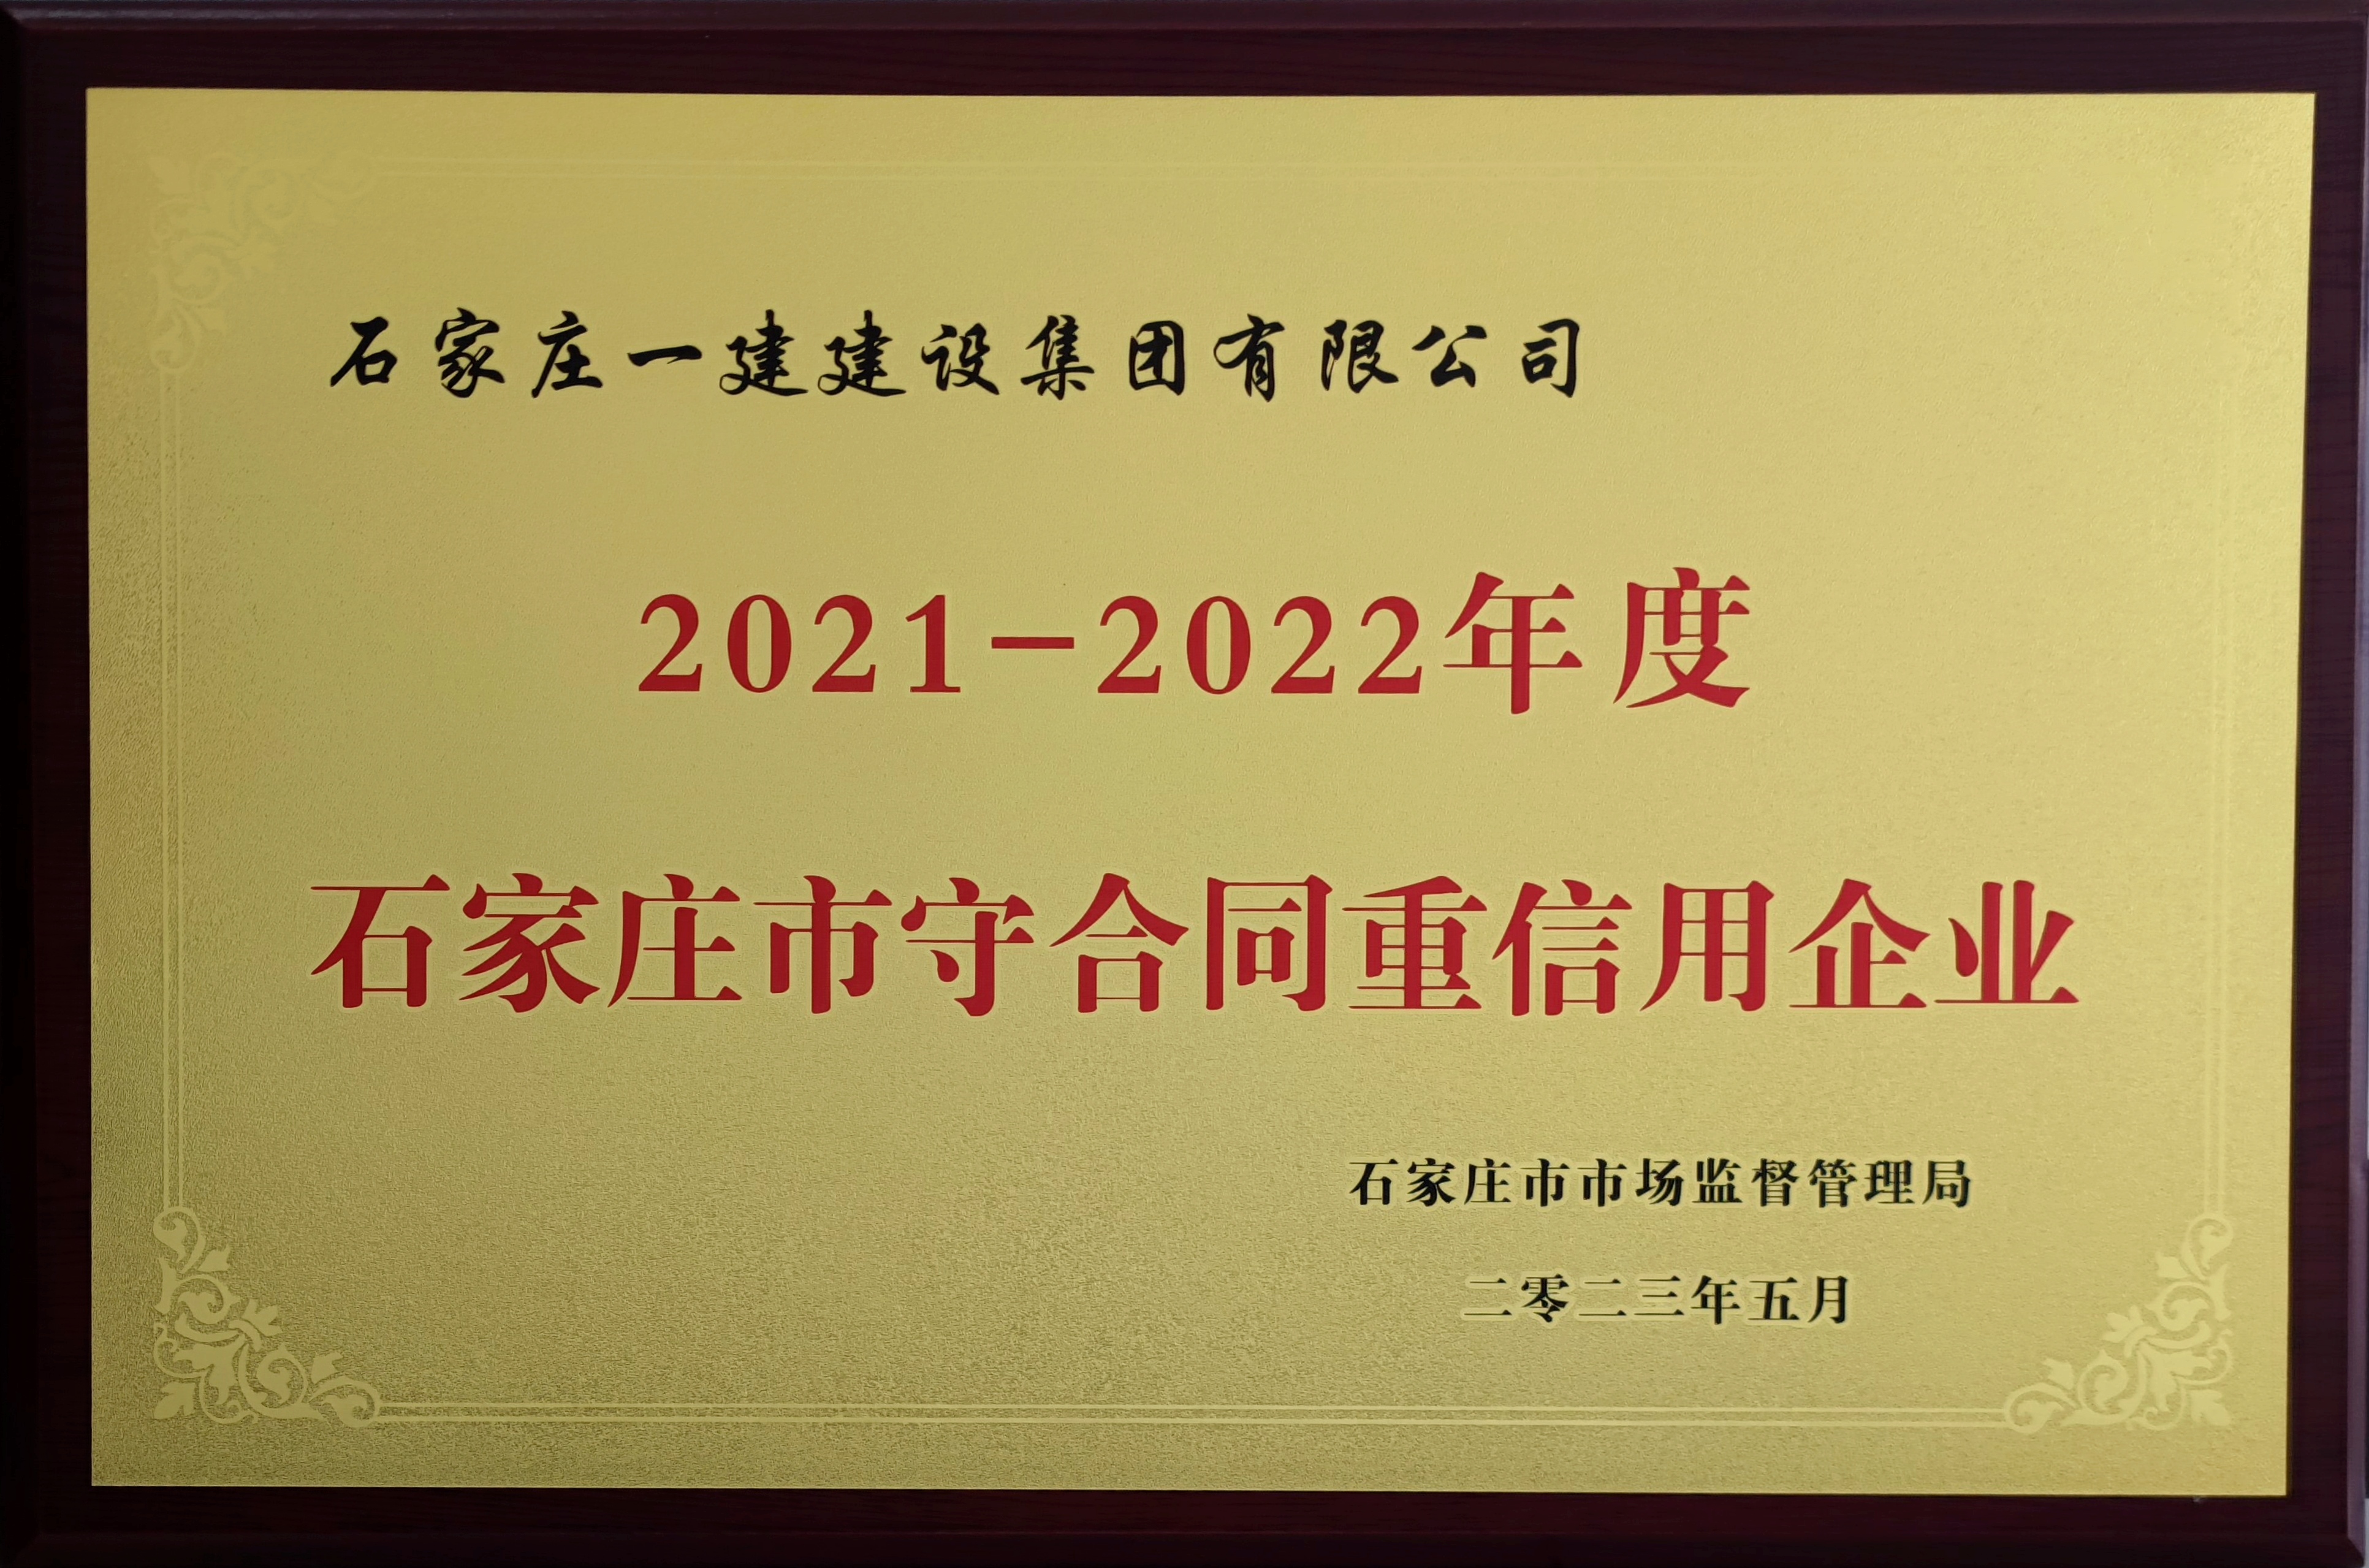 2021-2022年度石家莊市守合同重信用企業